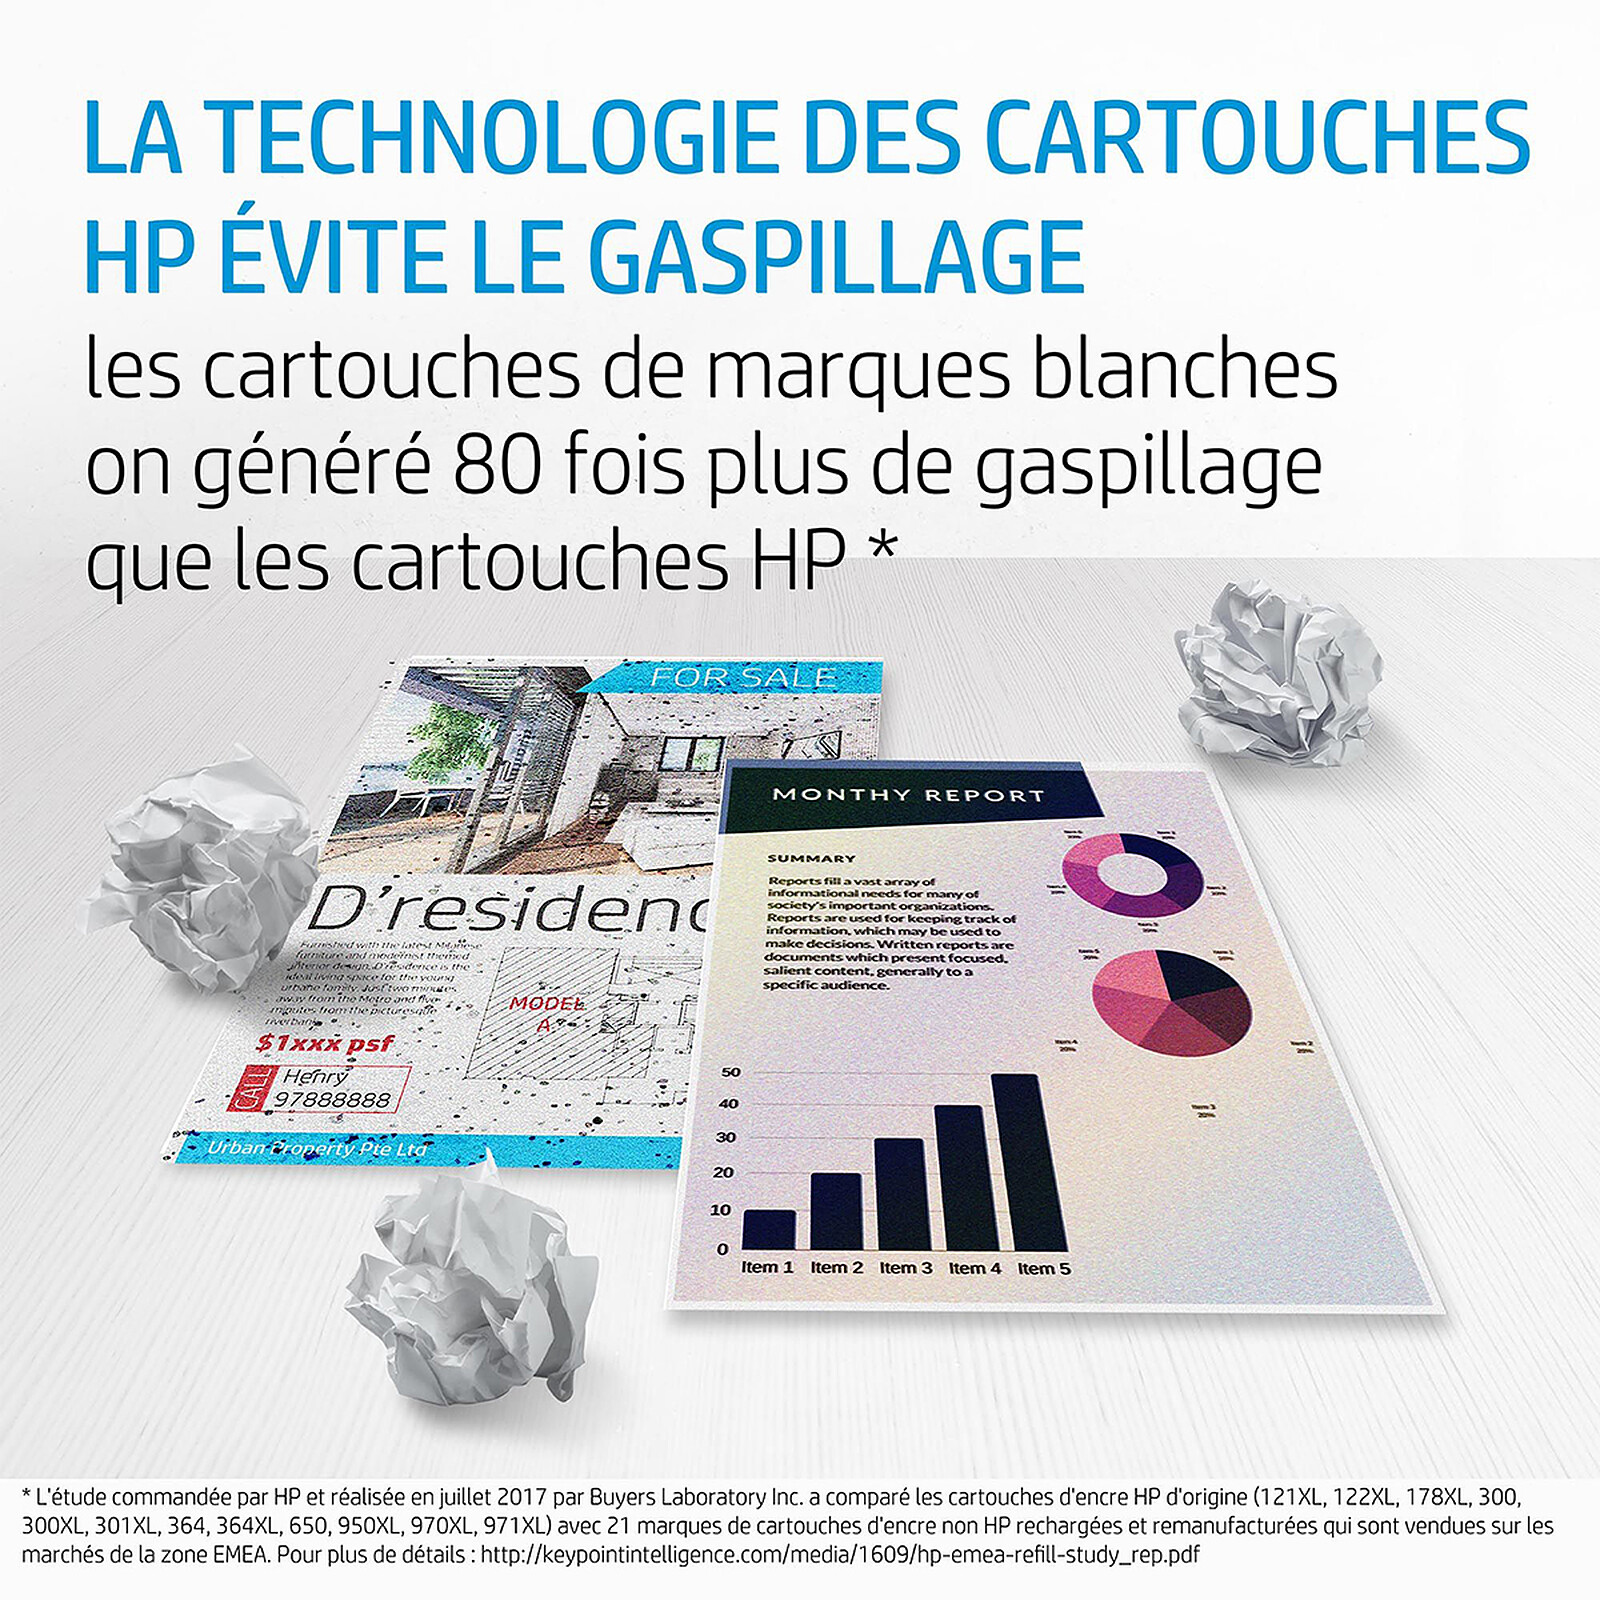 Cartouche d'encre HP 903 noire + 3 couleurs